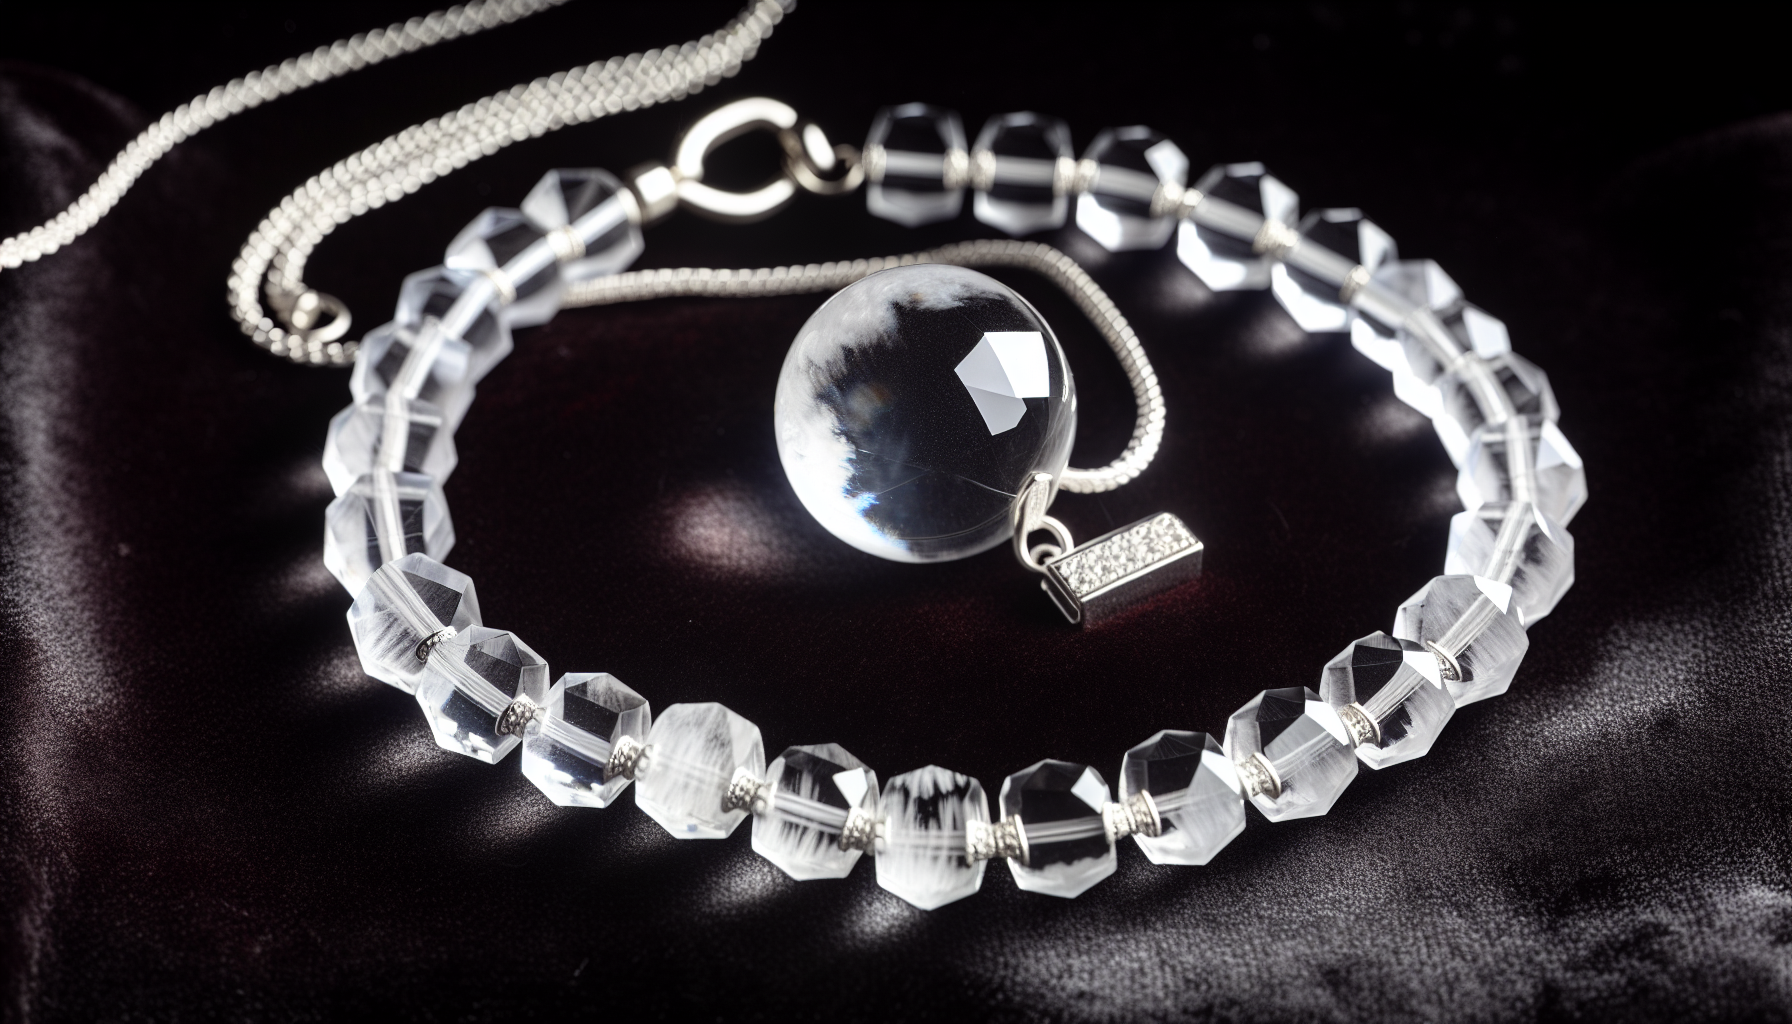 A clear quartz pendant and bracelet